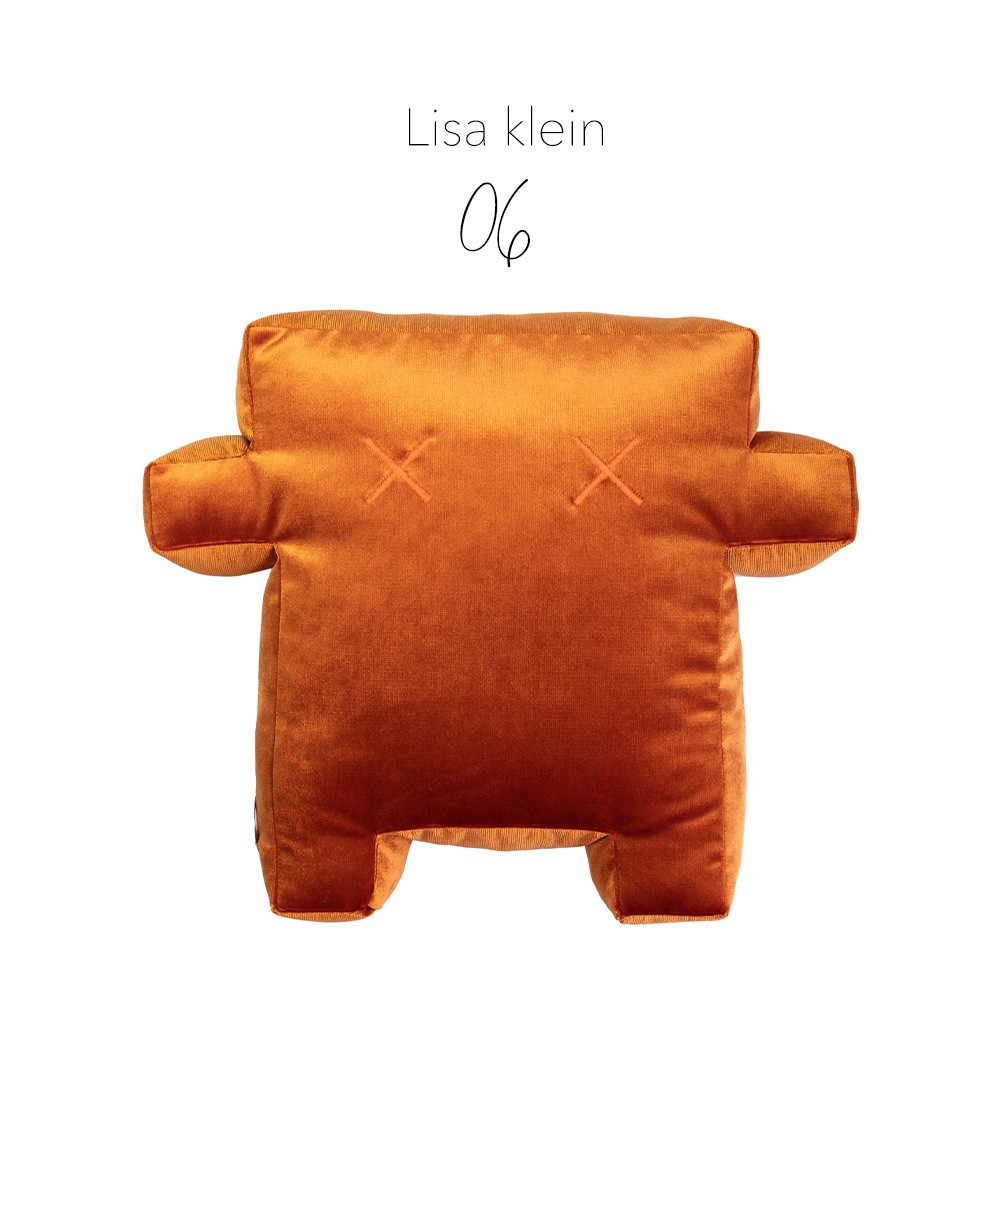 Produktbild des "Monster Lisa klein"  des Herstellers LPJ im RAUM Conceptstore